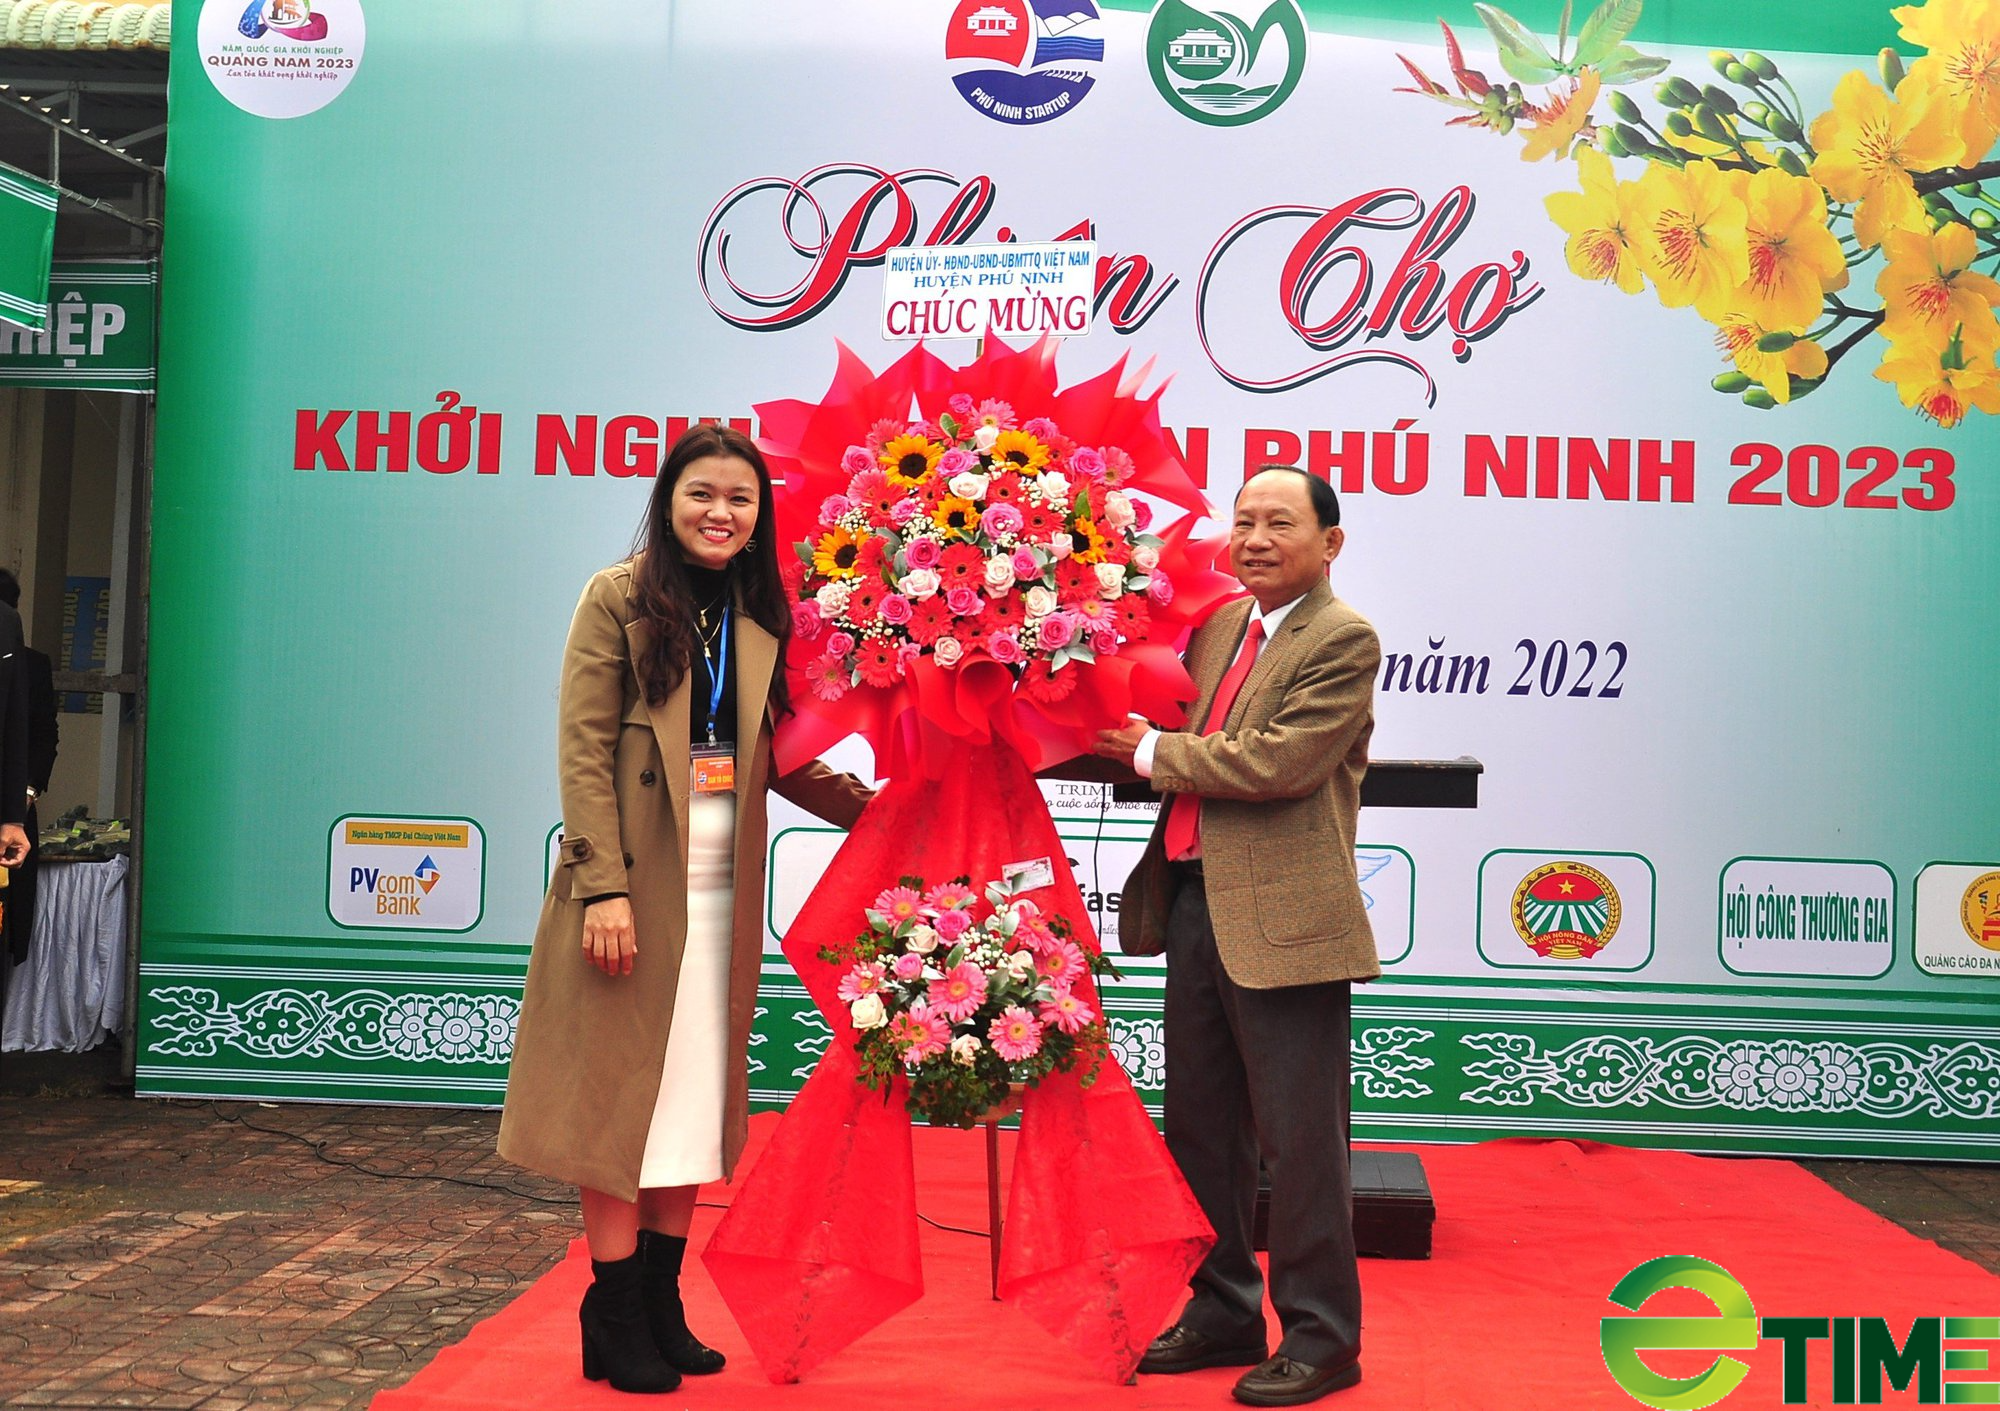 Quảng Nam: 30 doanh nghiệp tham gia phiên chợ khởi nghiệp đổi mới sáng tạo ở huyện Phú Ninh - Ảnh 1.